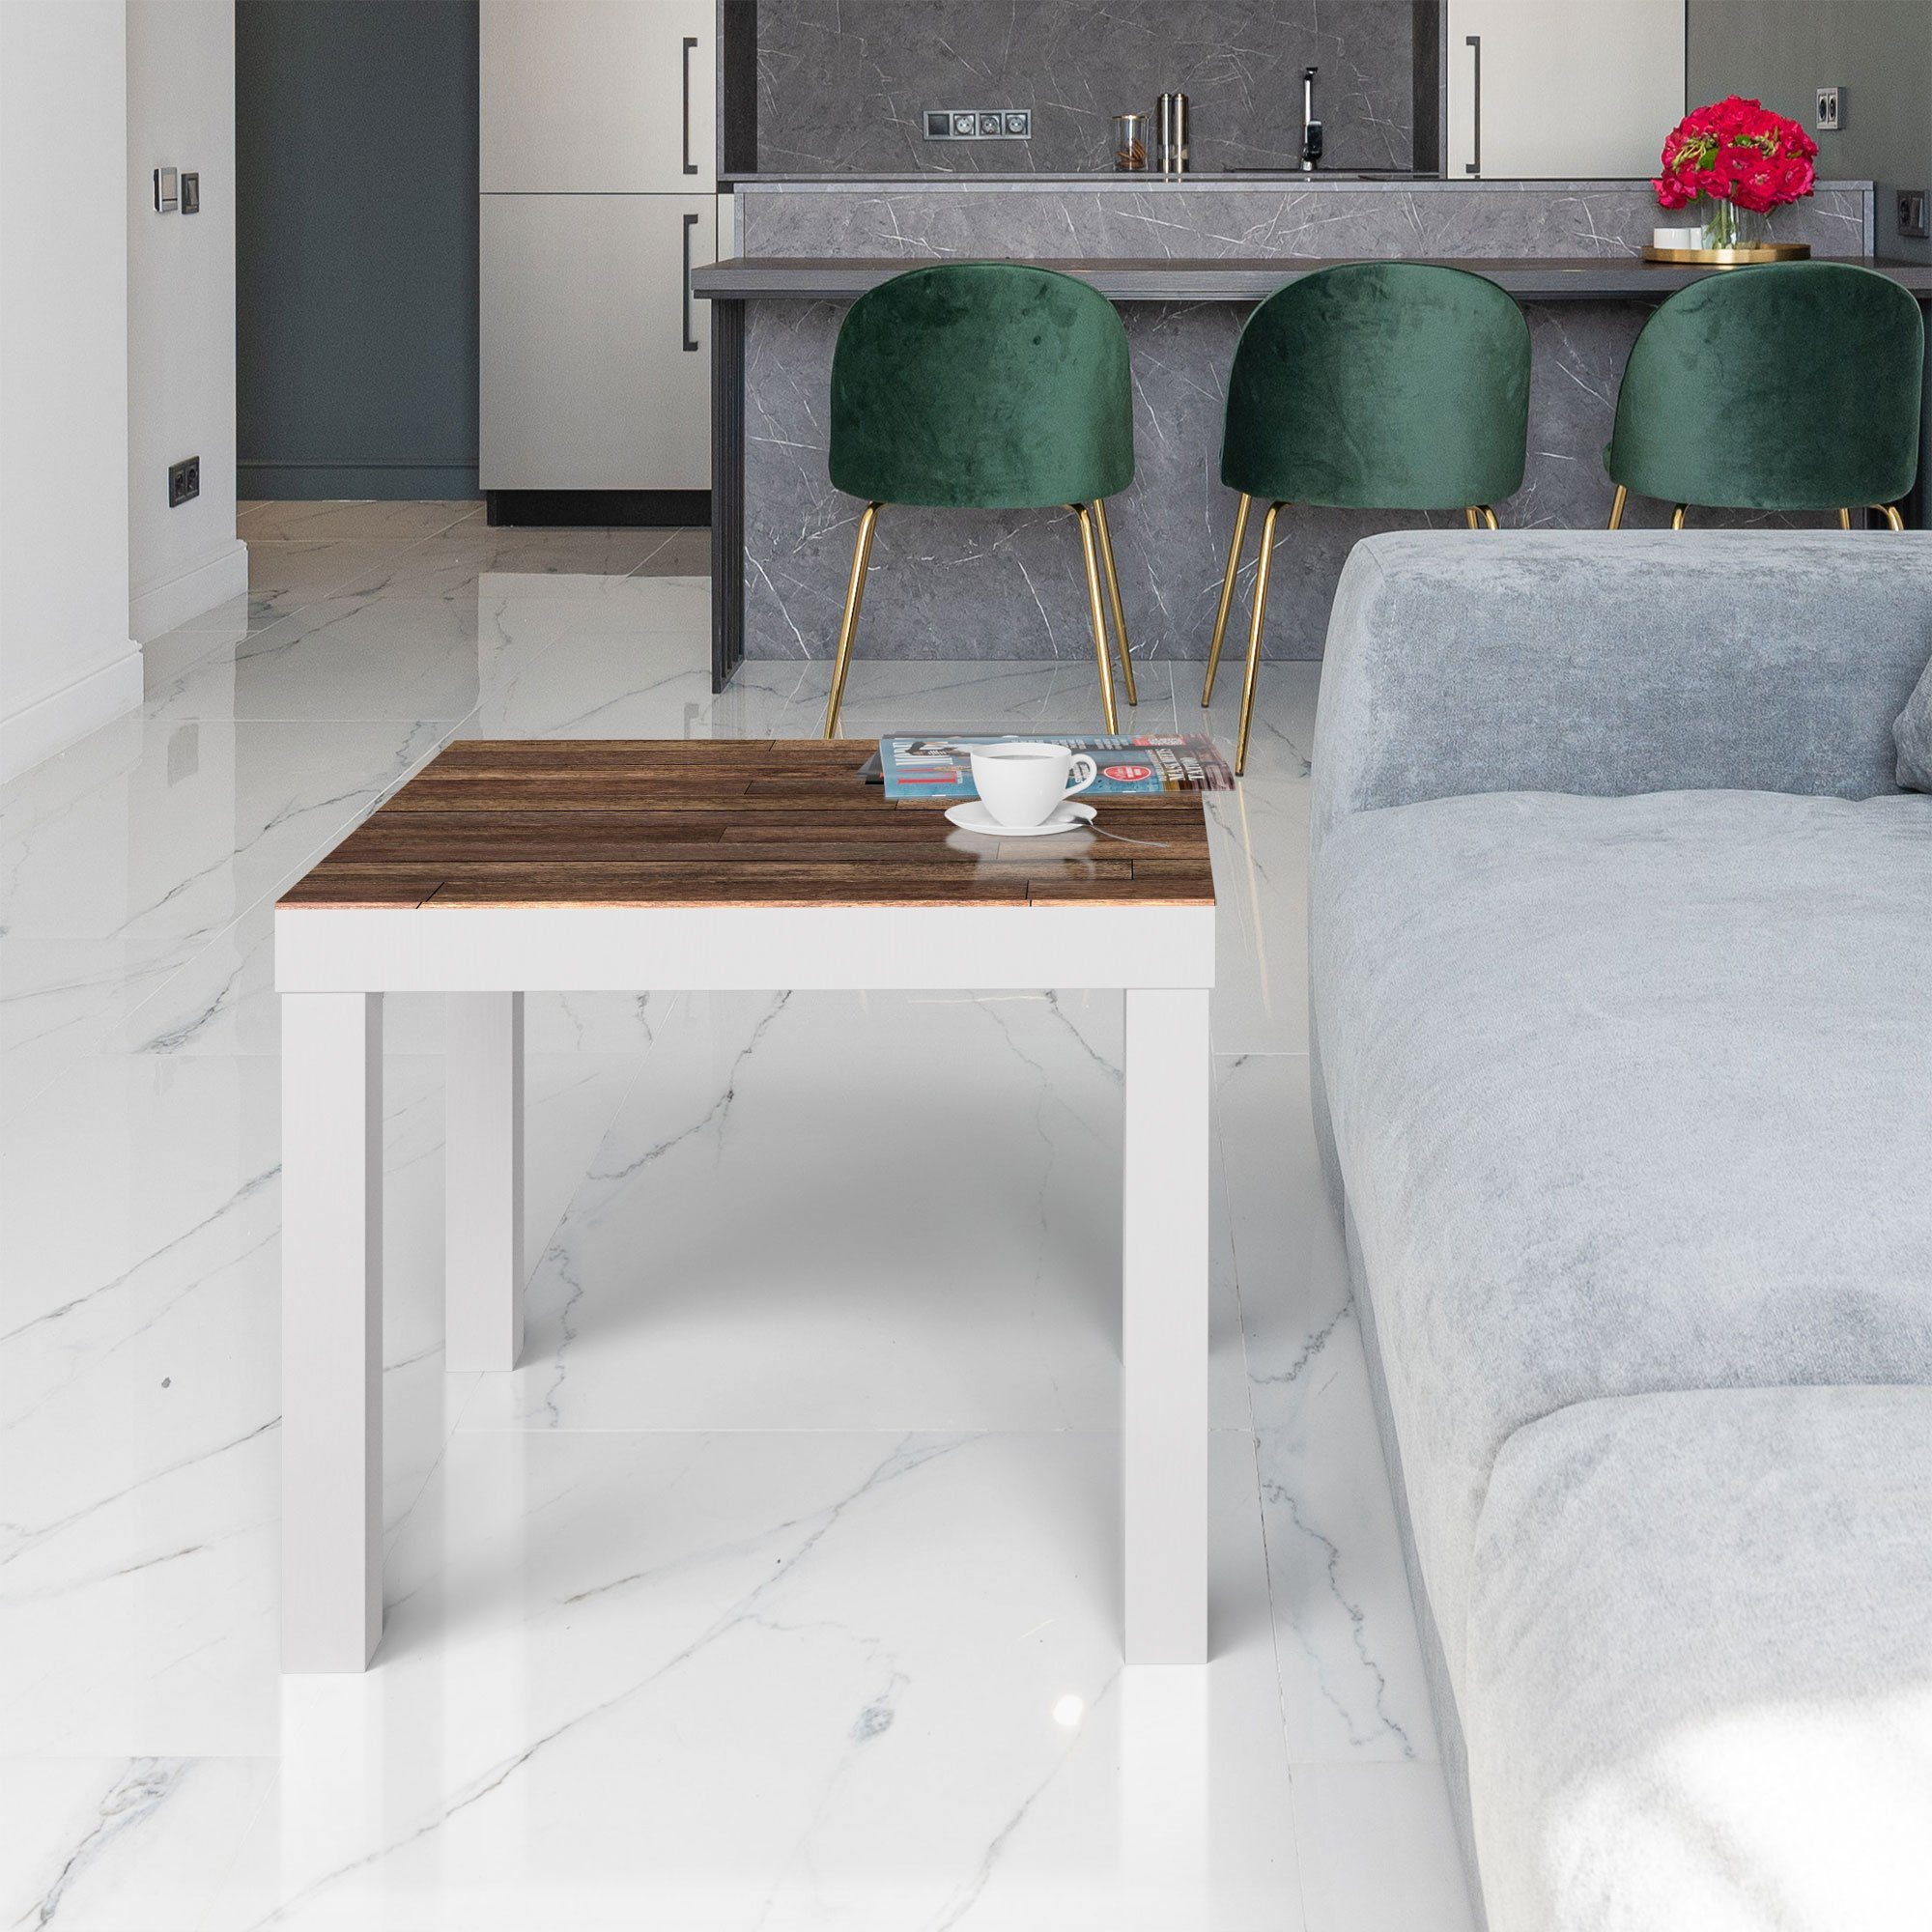 Beistelltisch auf Holzboden', DEQORI modern Weiß Glas Glastisch Couchtisch 'Blick